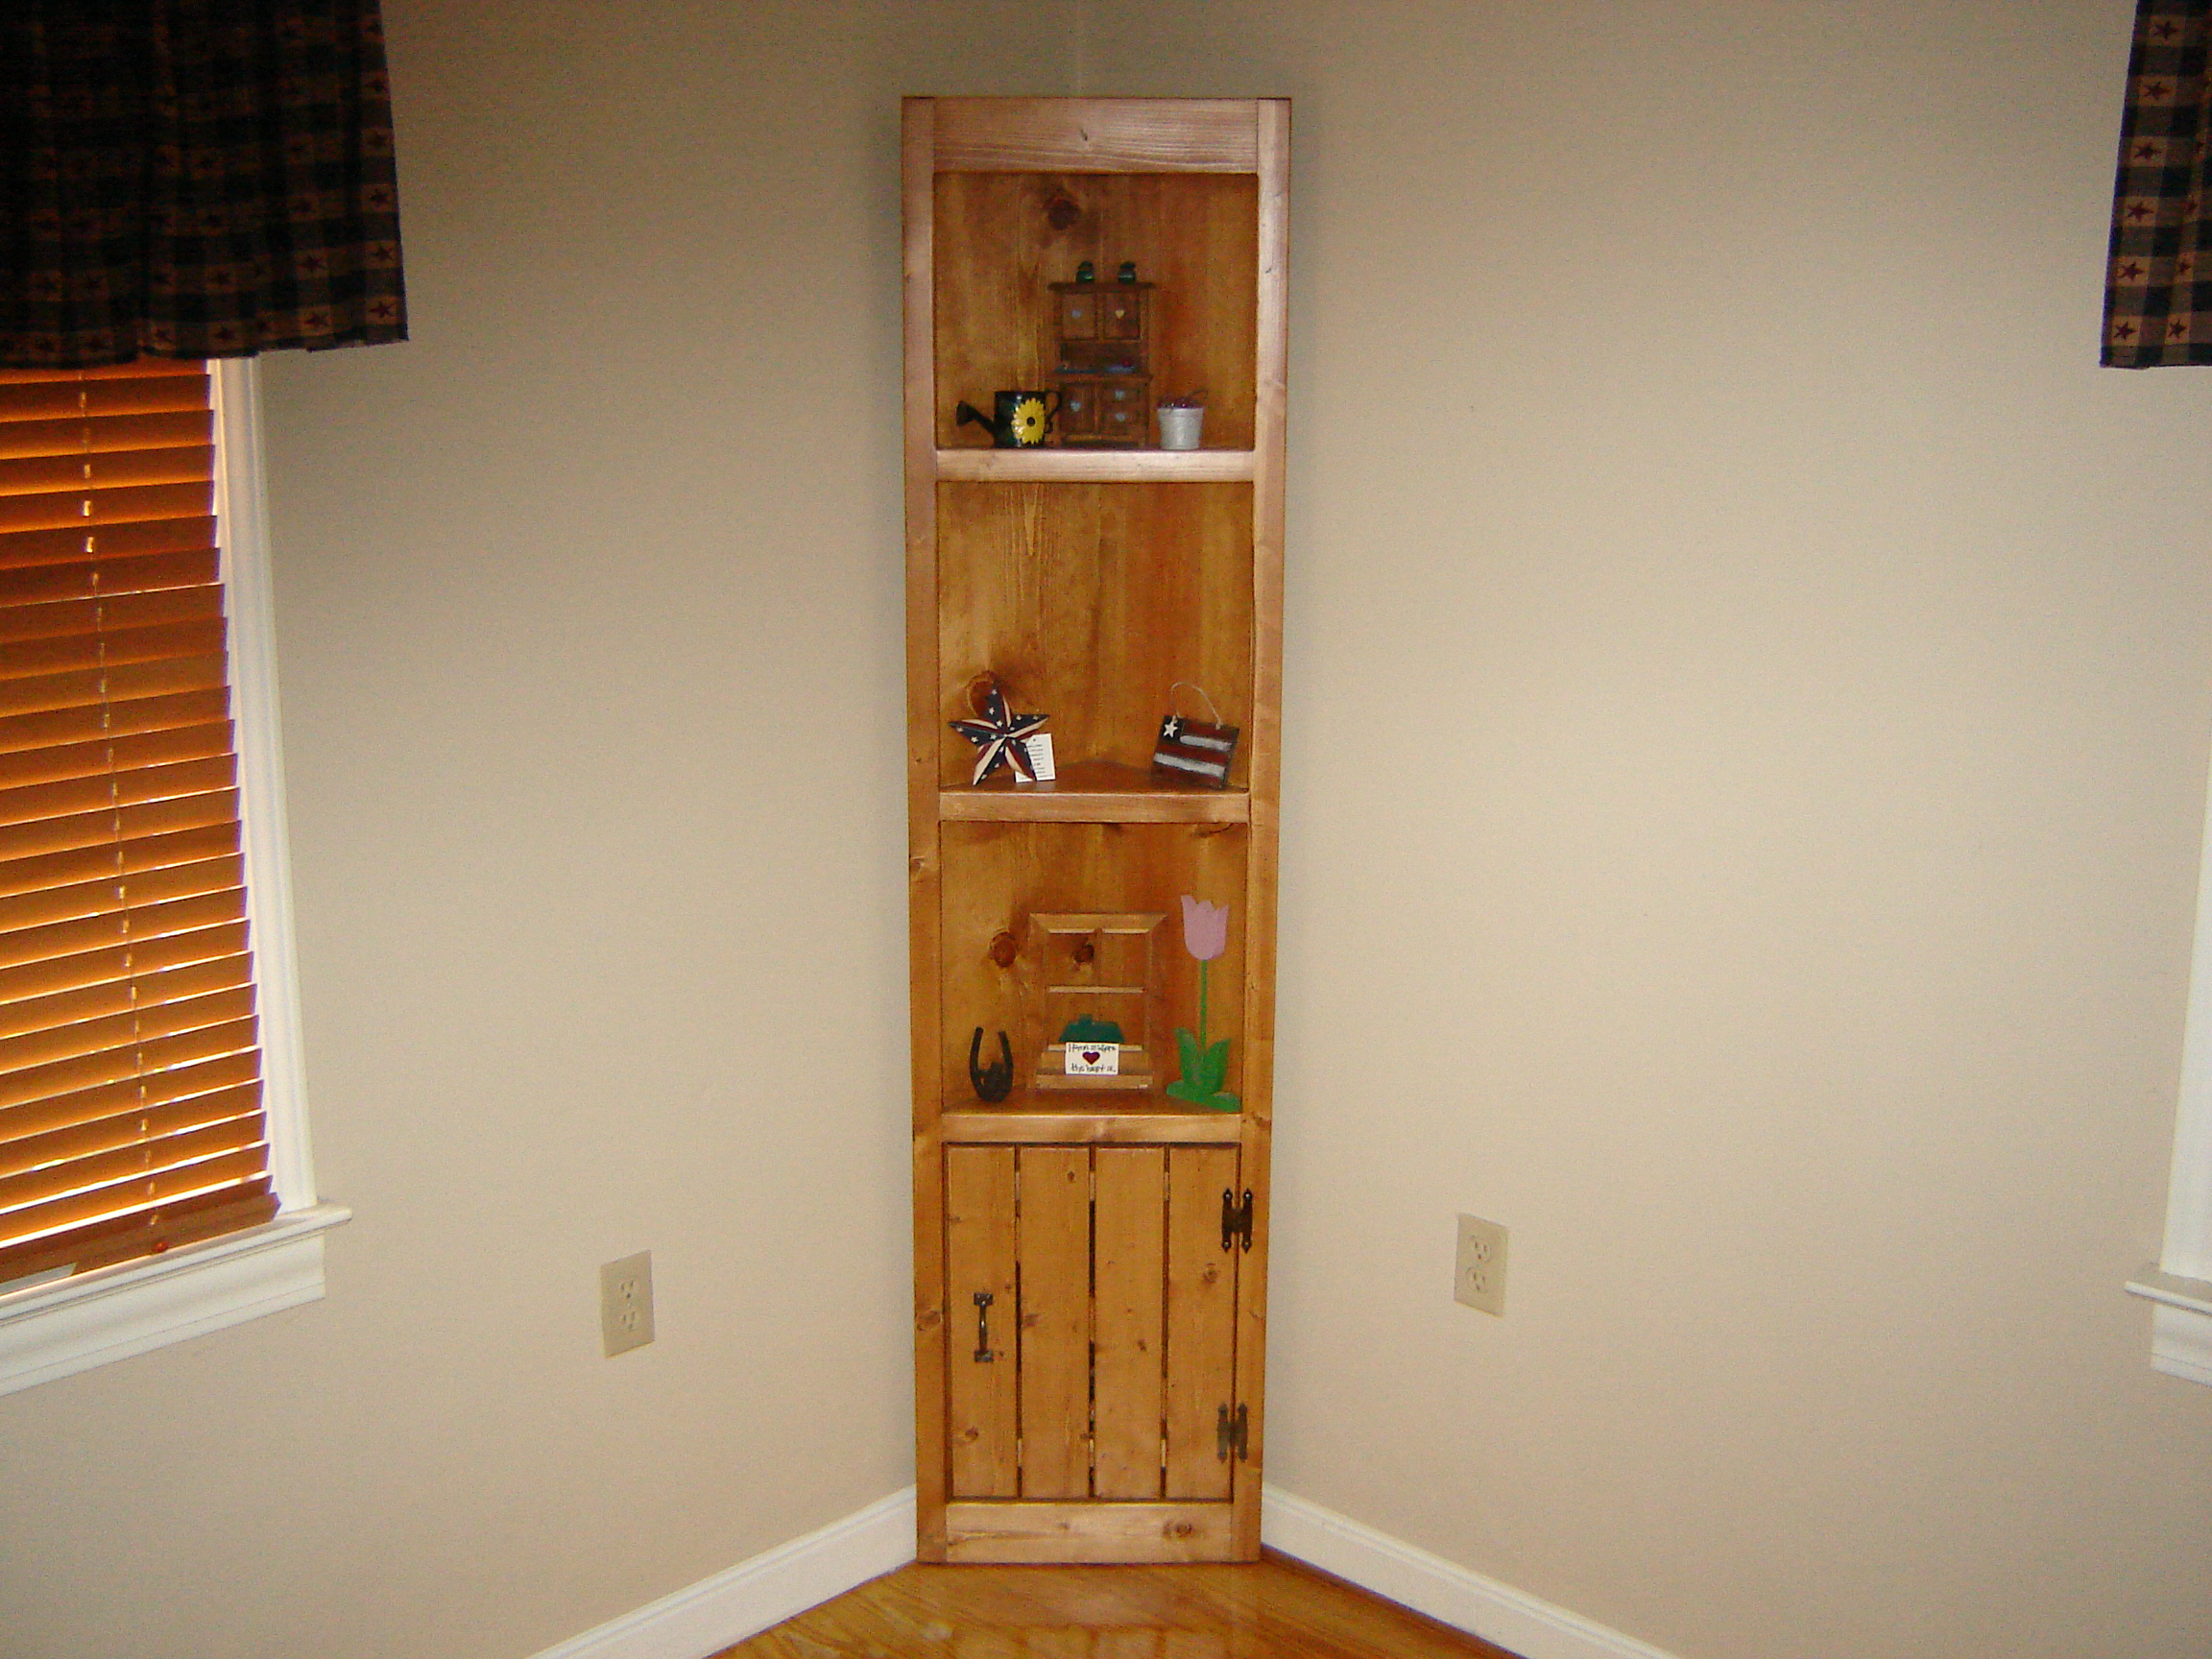 Corner Cabinet